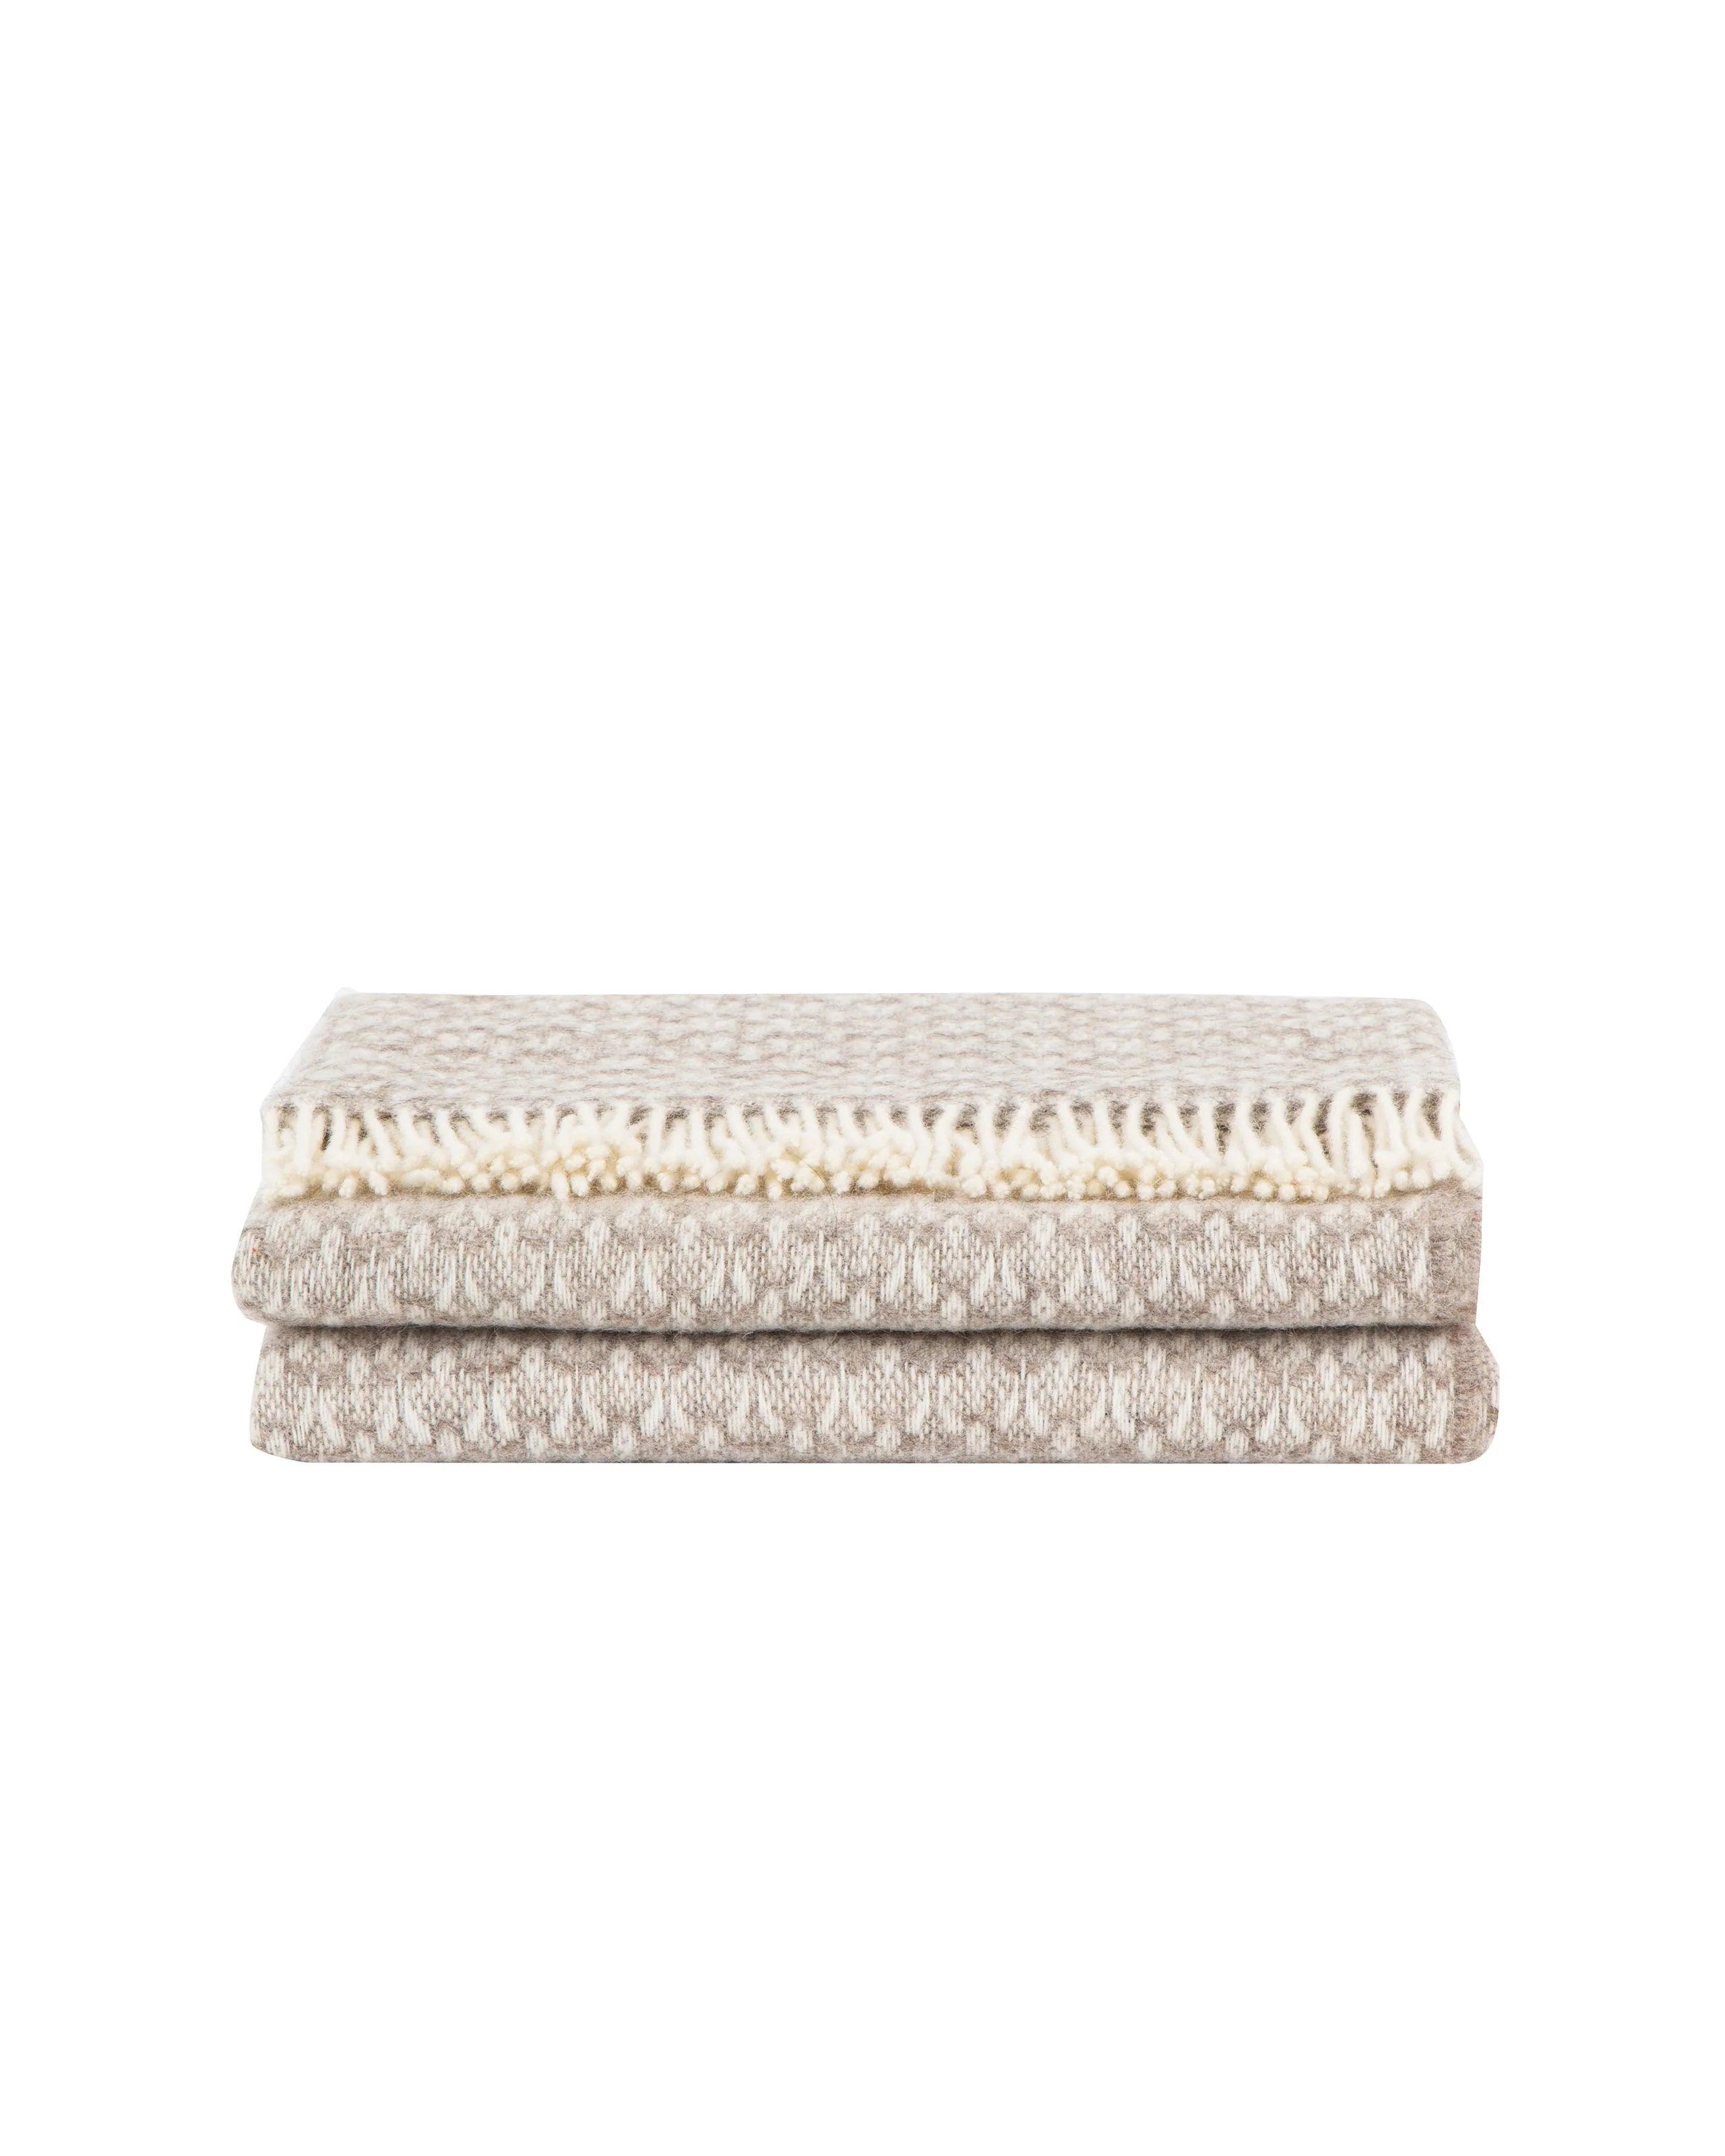 Braies T Virgin Wool Plaid Throw - Elegant Linen